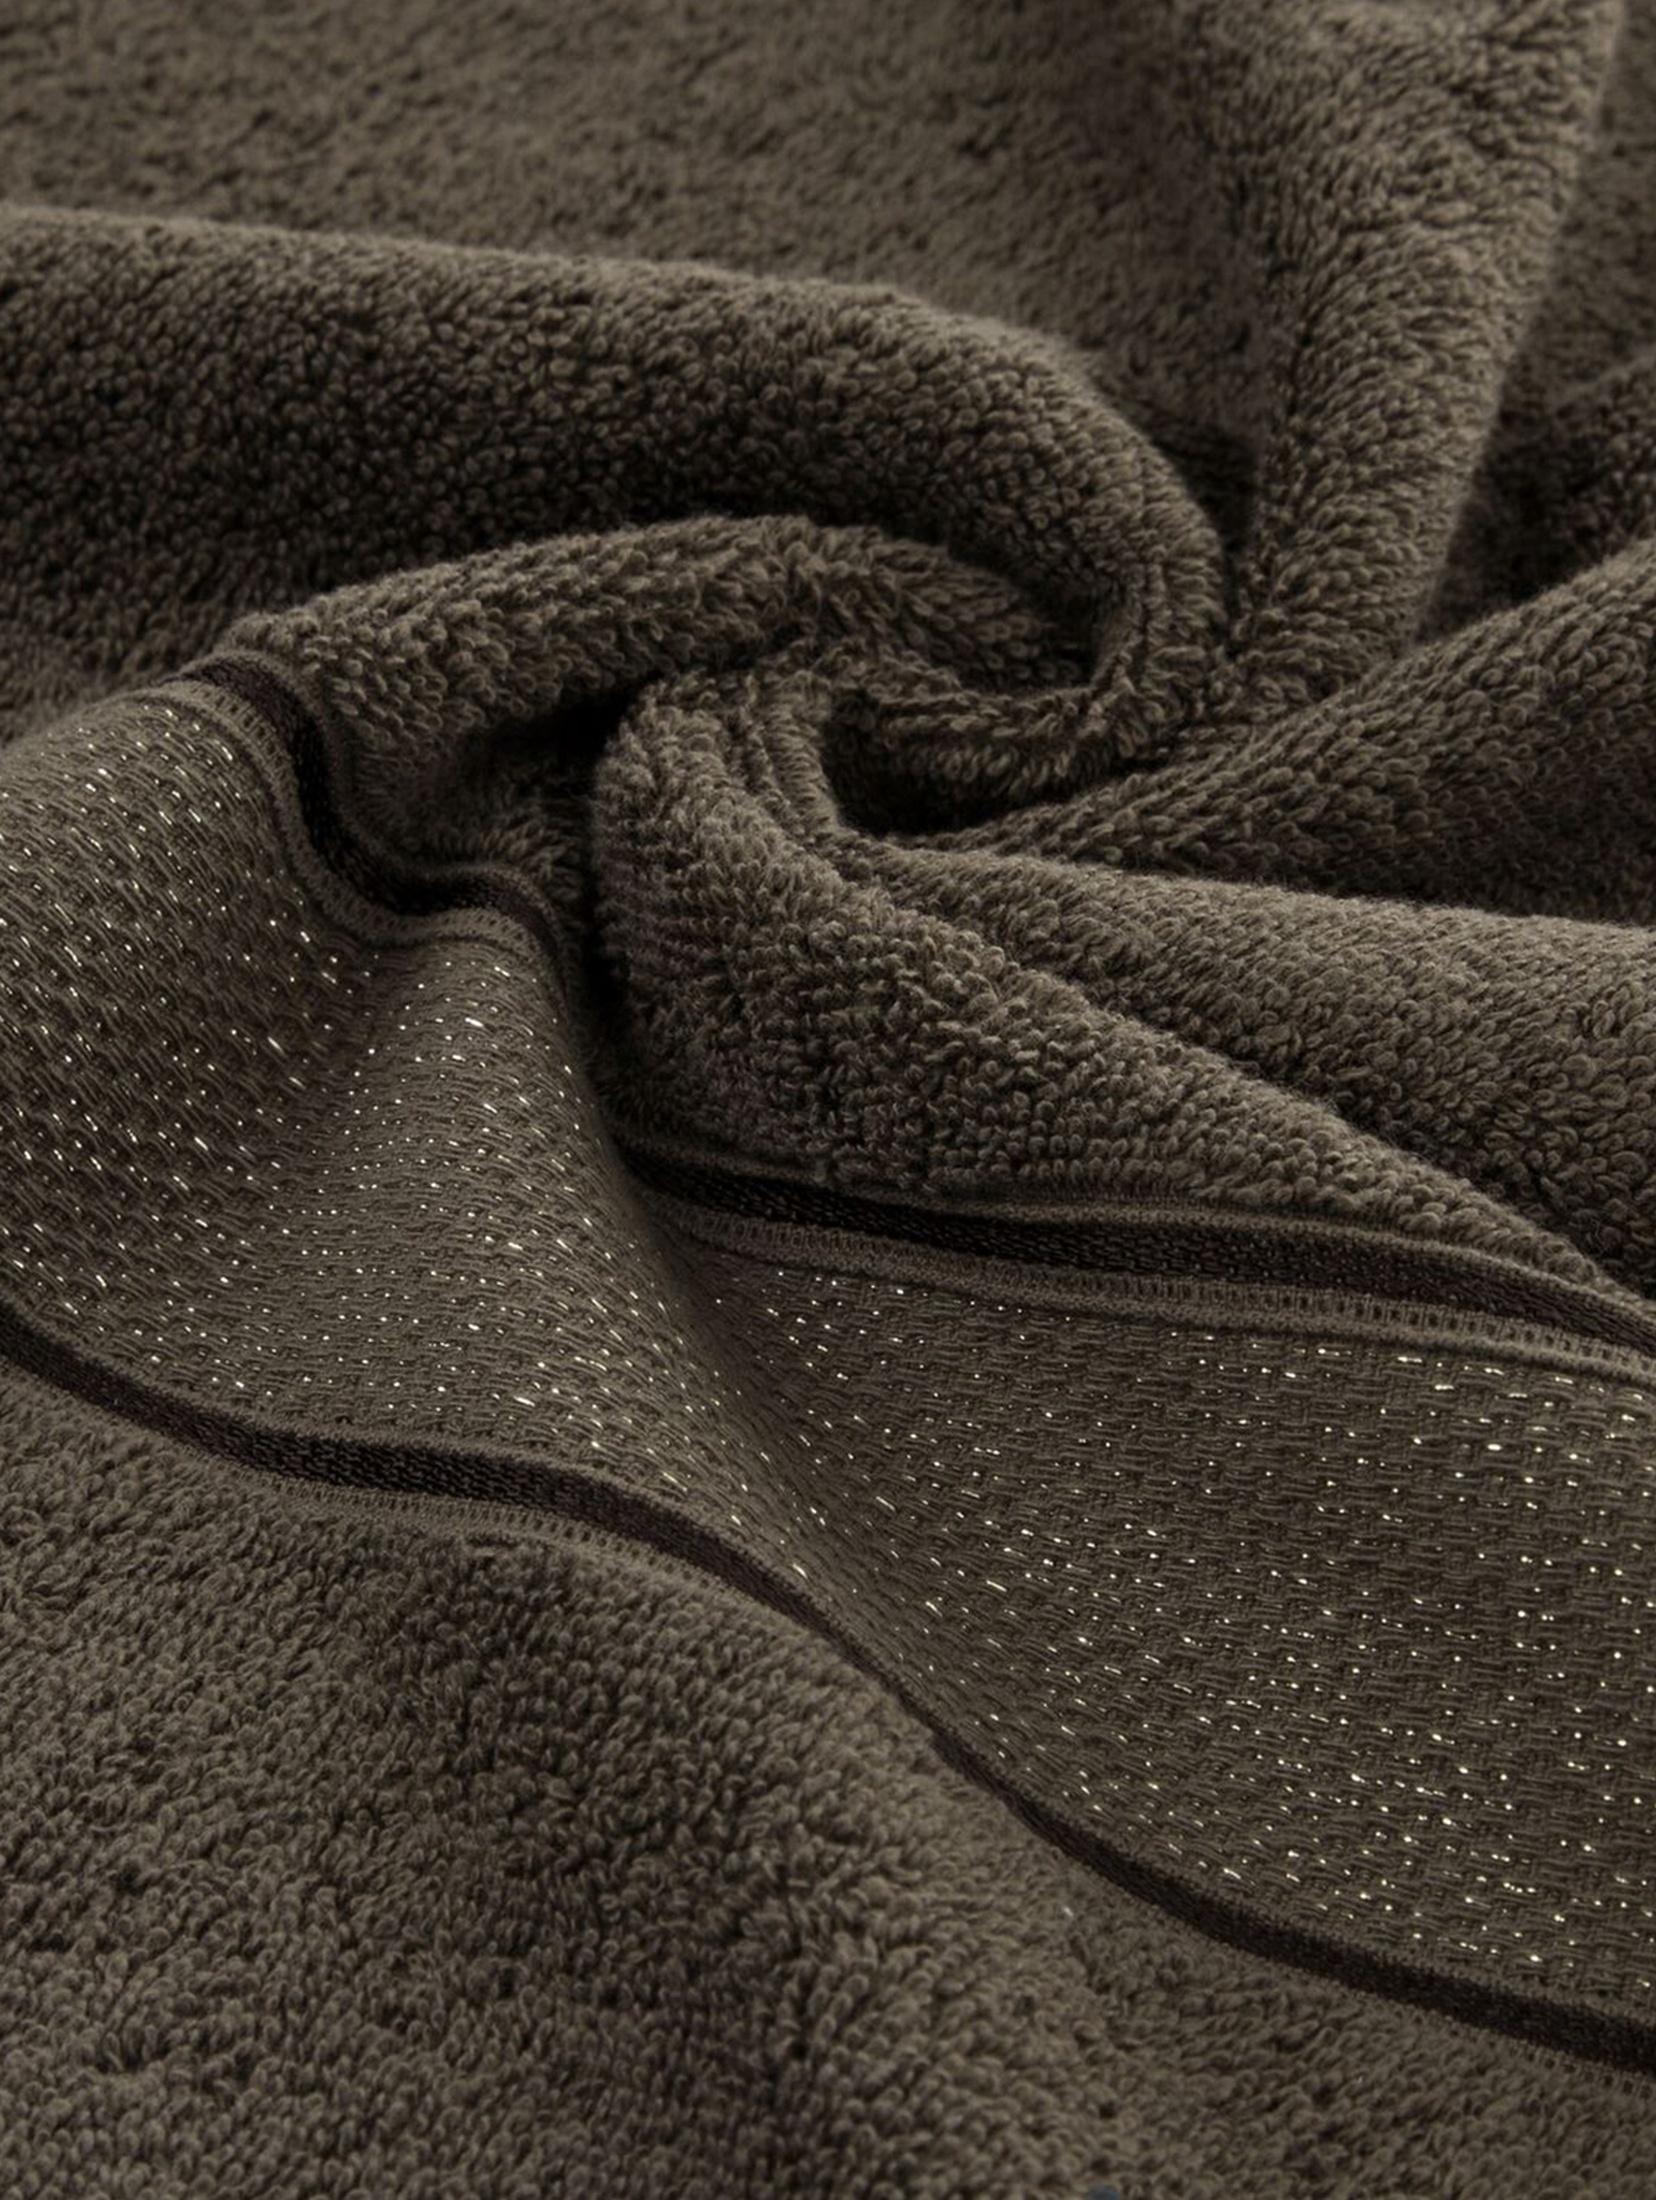 Ręcznik kąpielowy LIANA z bawełny 70x140 cm ciemnobrązowy